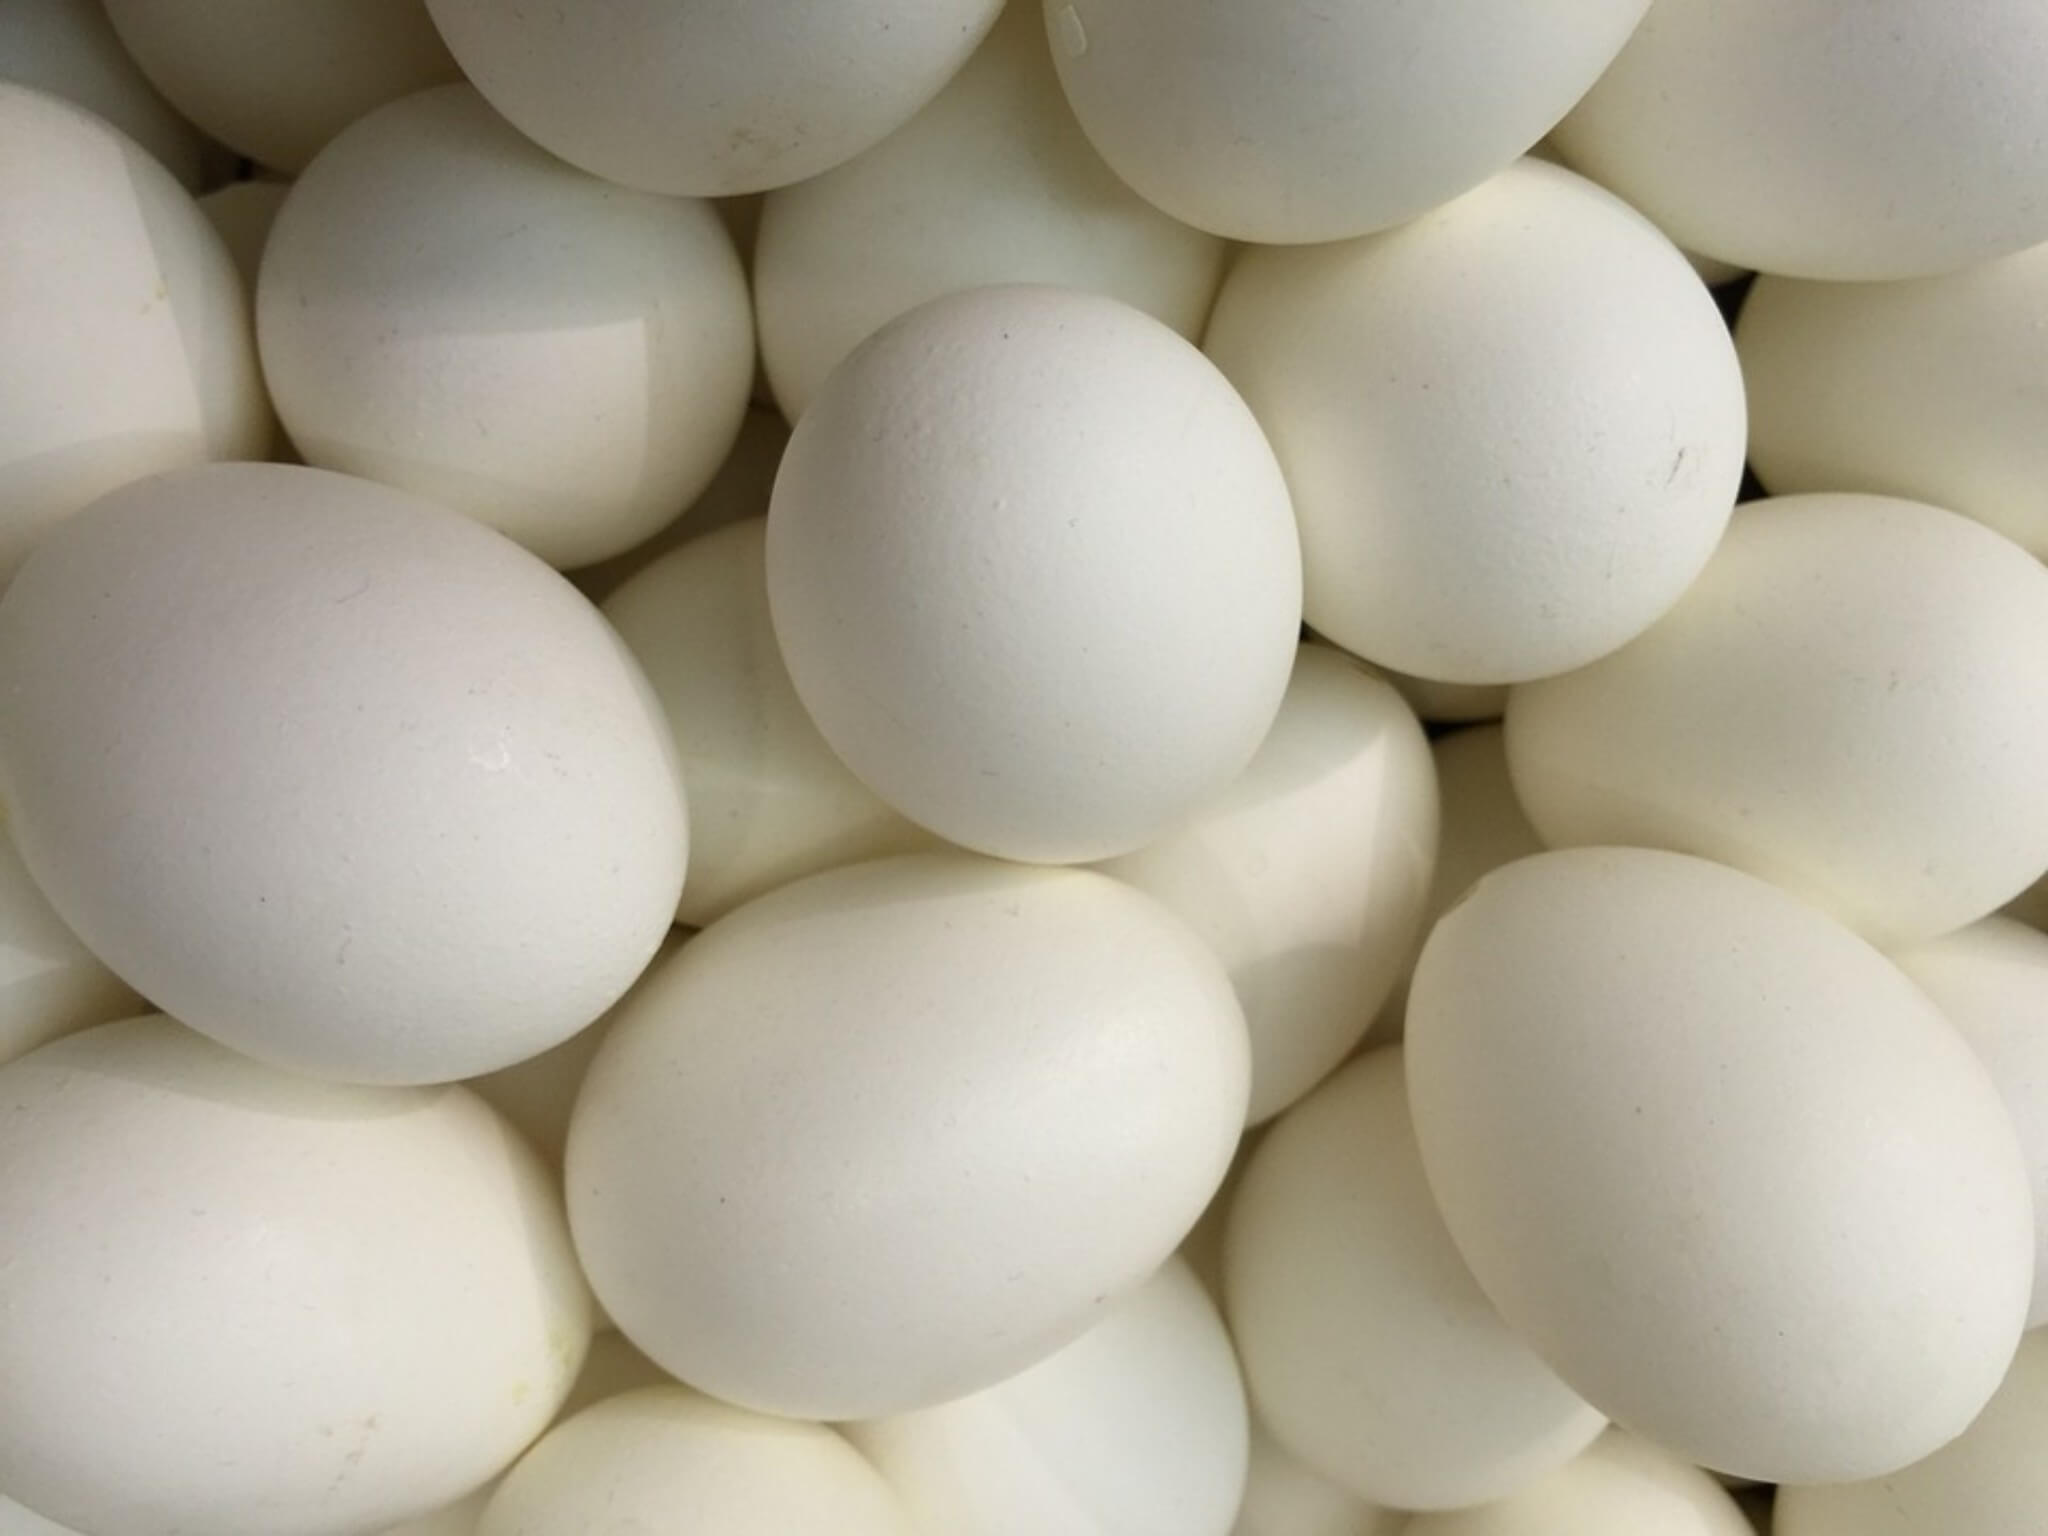 uova fanno male falso mito alimentazione